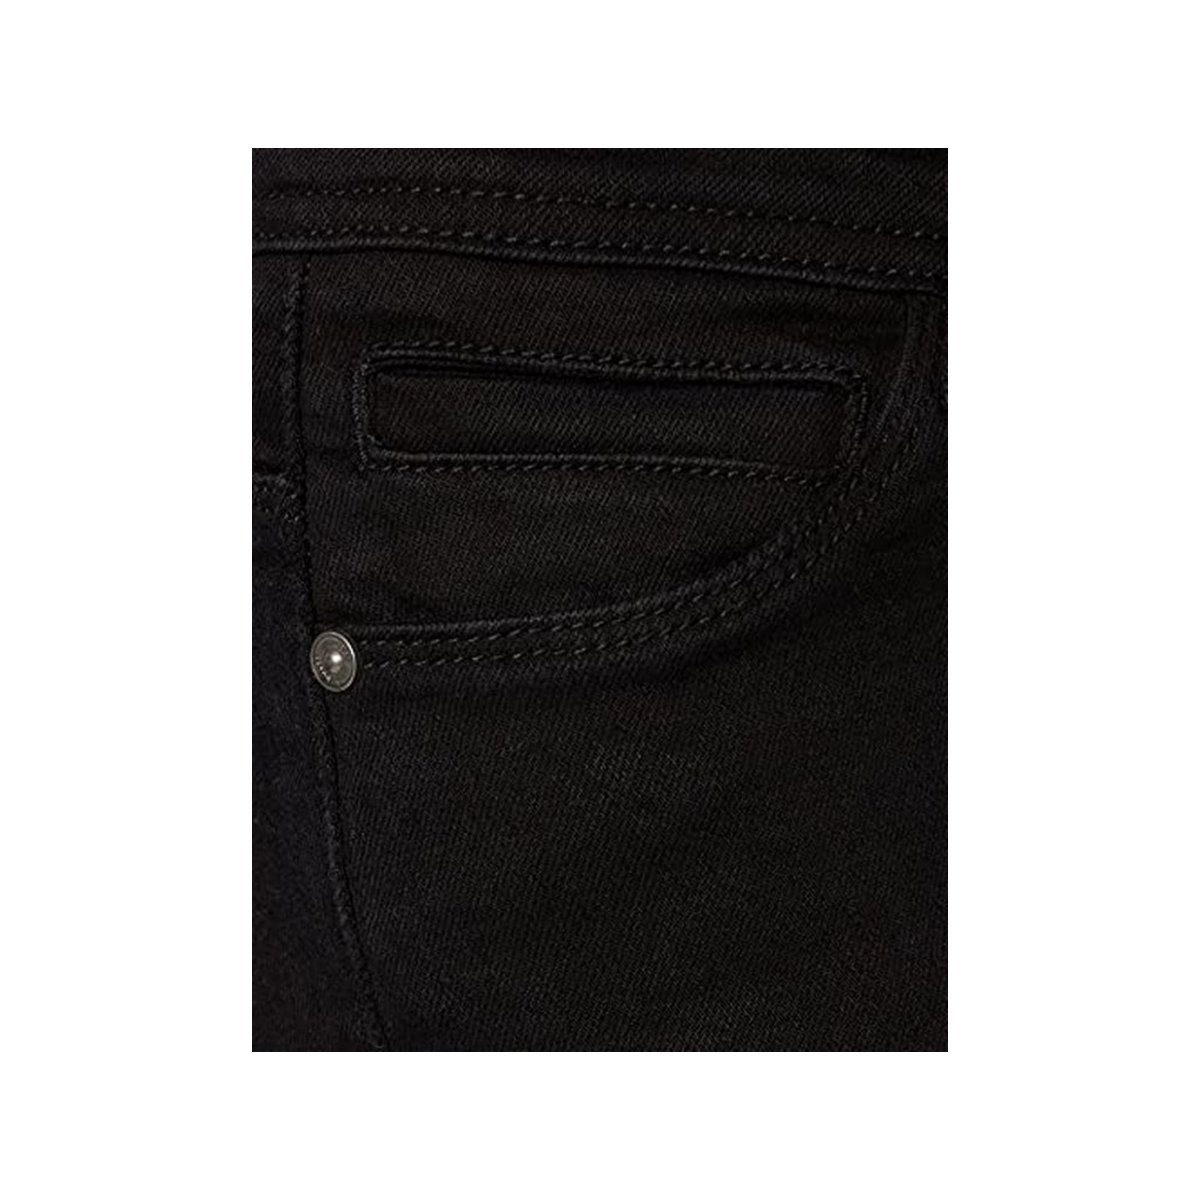 Noisy schwarz (1-tlg) may 5-Pocket-Jeans